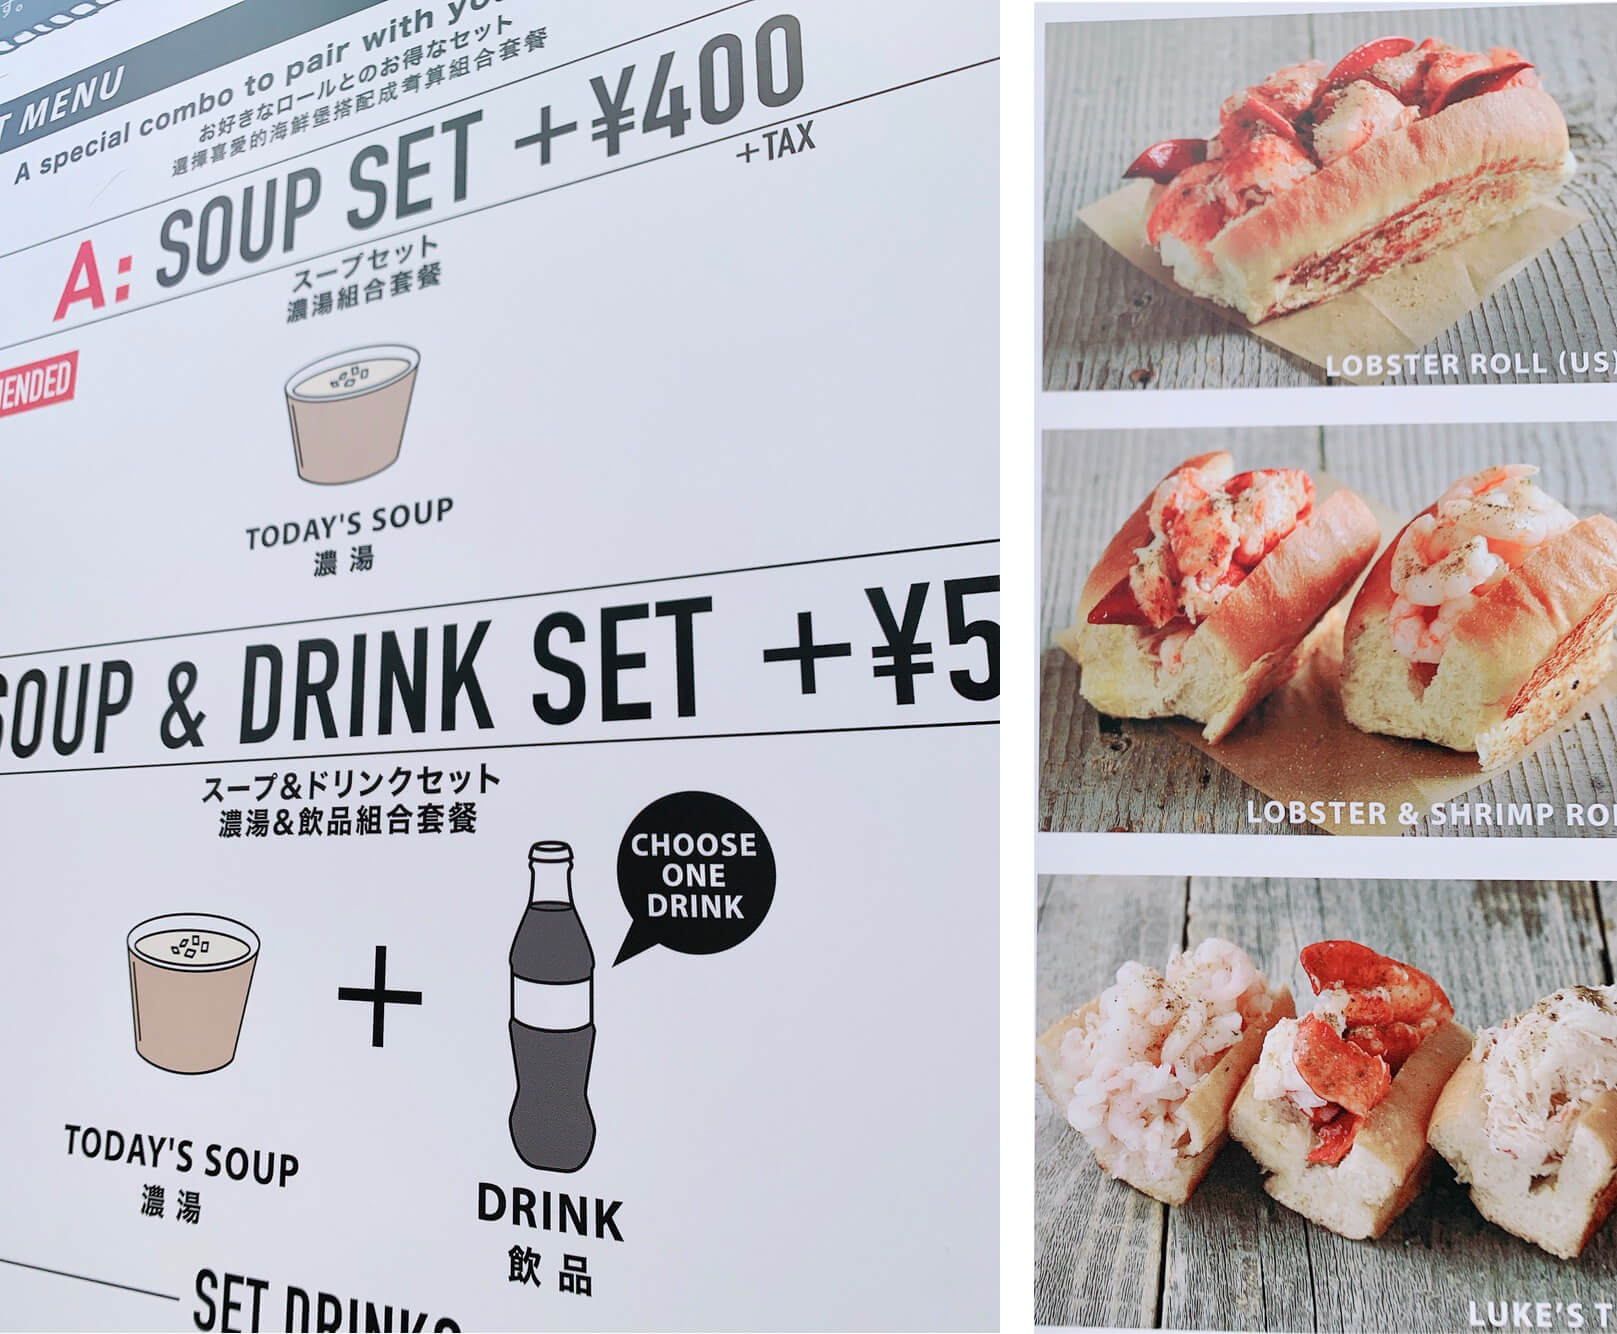 Luke’s lobster ในโตเกียว : ล็อบสเตอร์ทะลักๆ หวาน เนื้อแน่นๆ ในราคาแค่พันเยน!